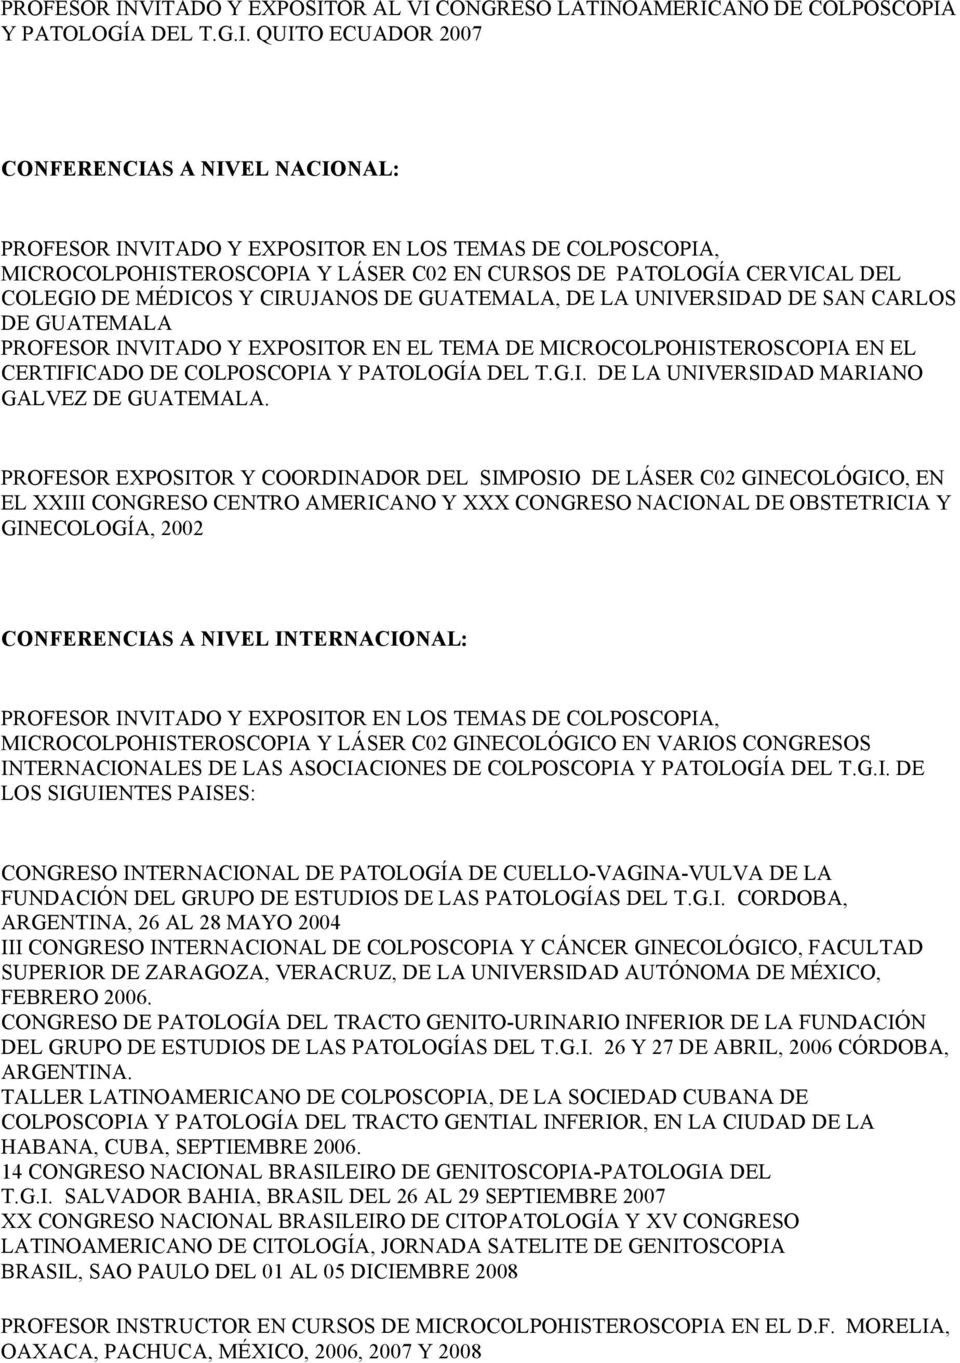 MICROCOLPOHISTEROSCOPIA Y LÁSER C02 EN CURSOS DE PATOLOGÍA CERVICAL DEL COLEGIO DE MÉDICOS Y CIRUJANOS DE GUATEMALA, DE LA UNIVERSIDAD DE SAN CARLOS DE GUATEMALA VITADO Y EXPOSITOR EN EL TEMA DE